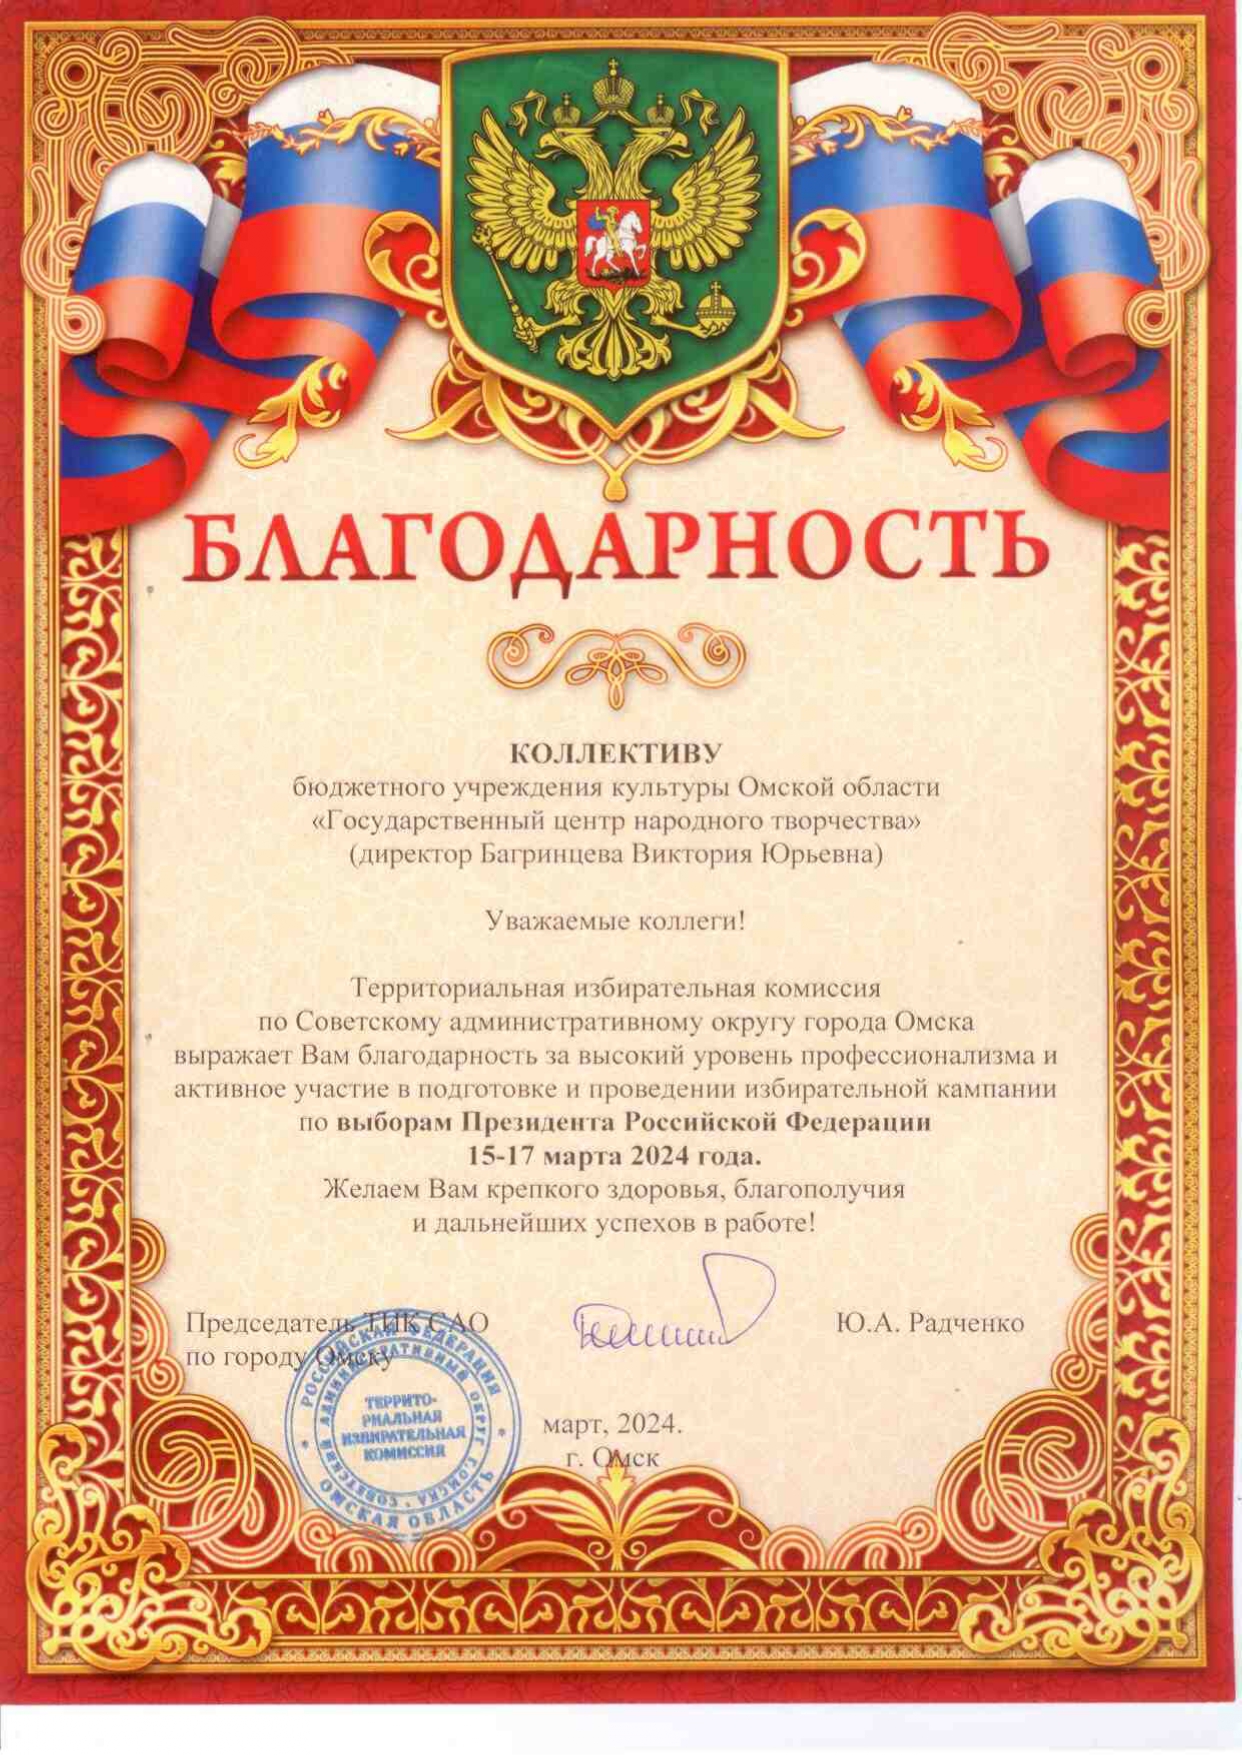 Коллектив ГЦНТ поблагодарили за организацию выборов Президента России